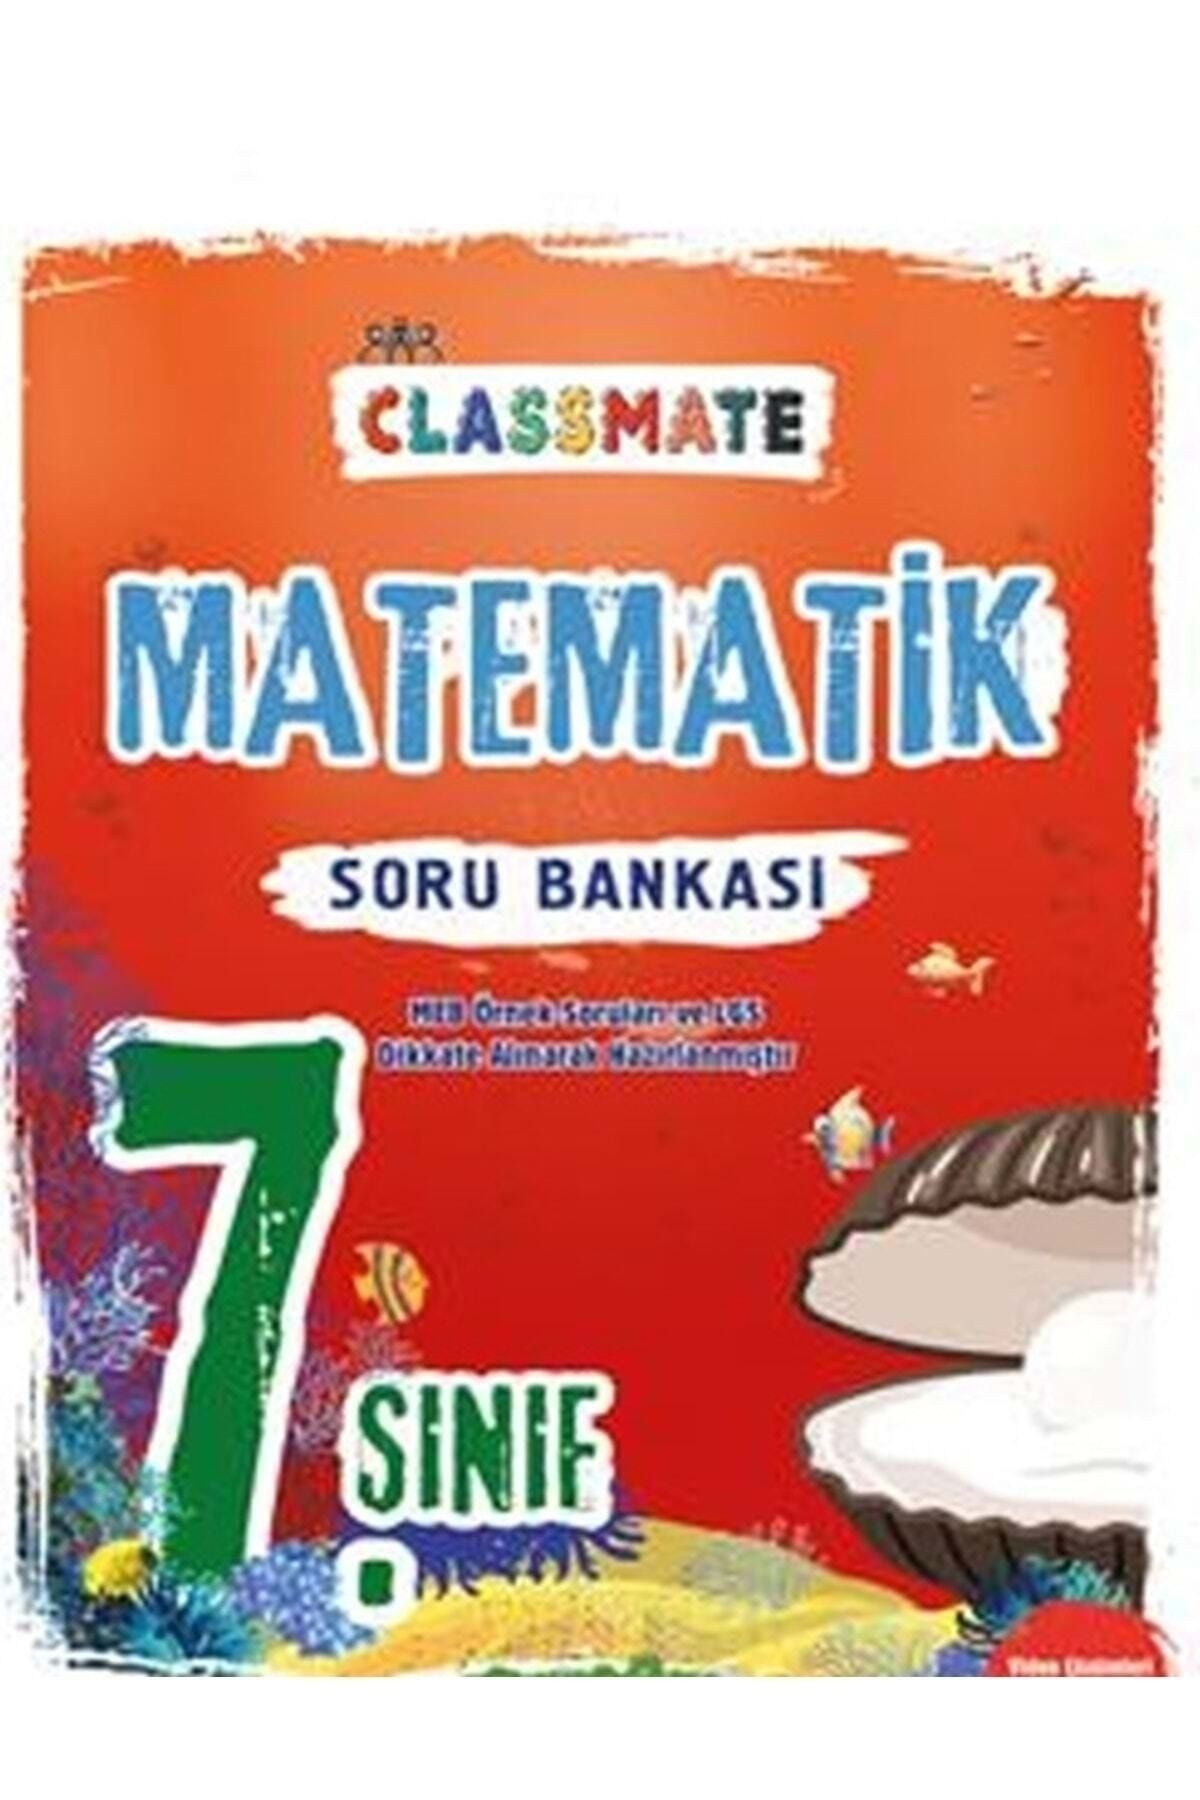 Okyanus Yayınları 7. Sınıf Classmate Matematik Soru Bankası